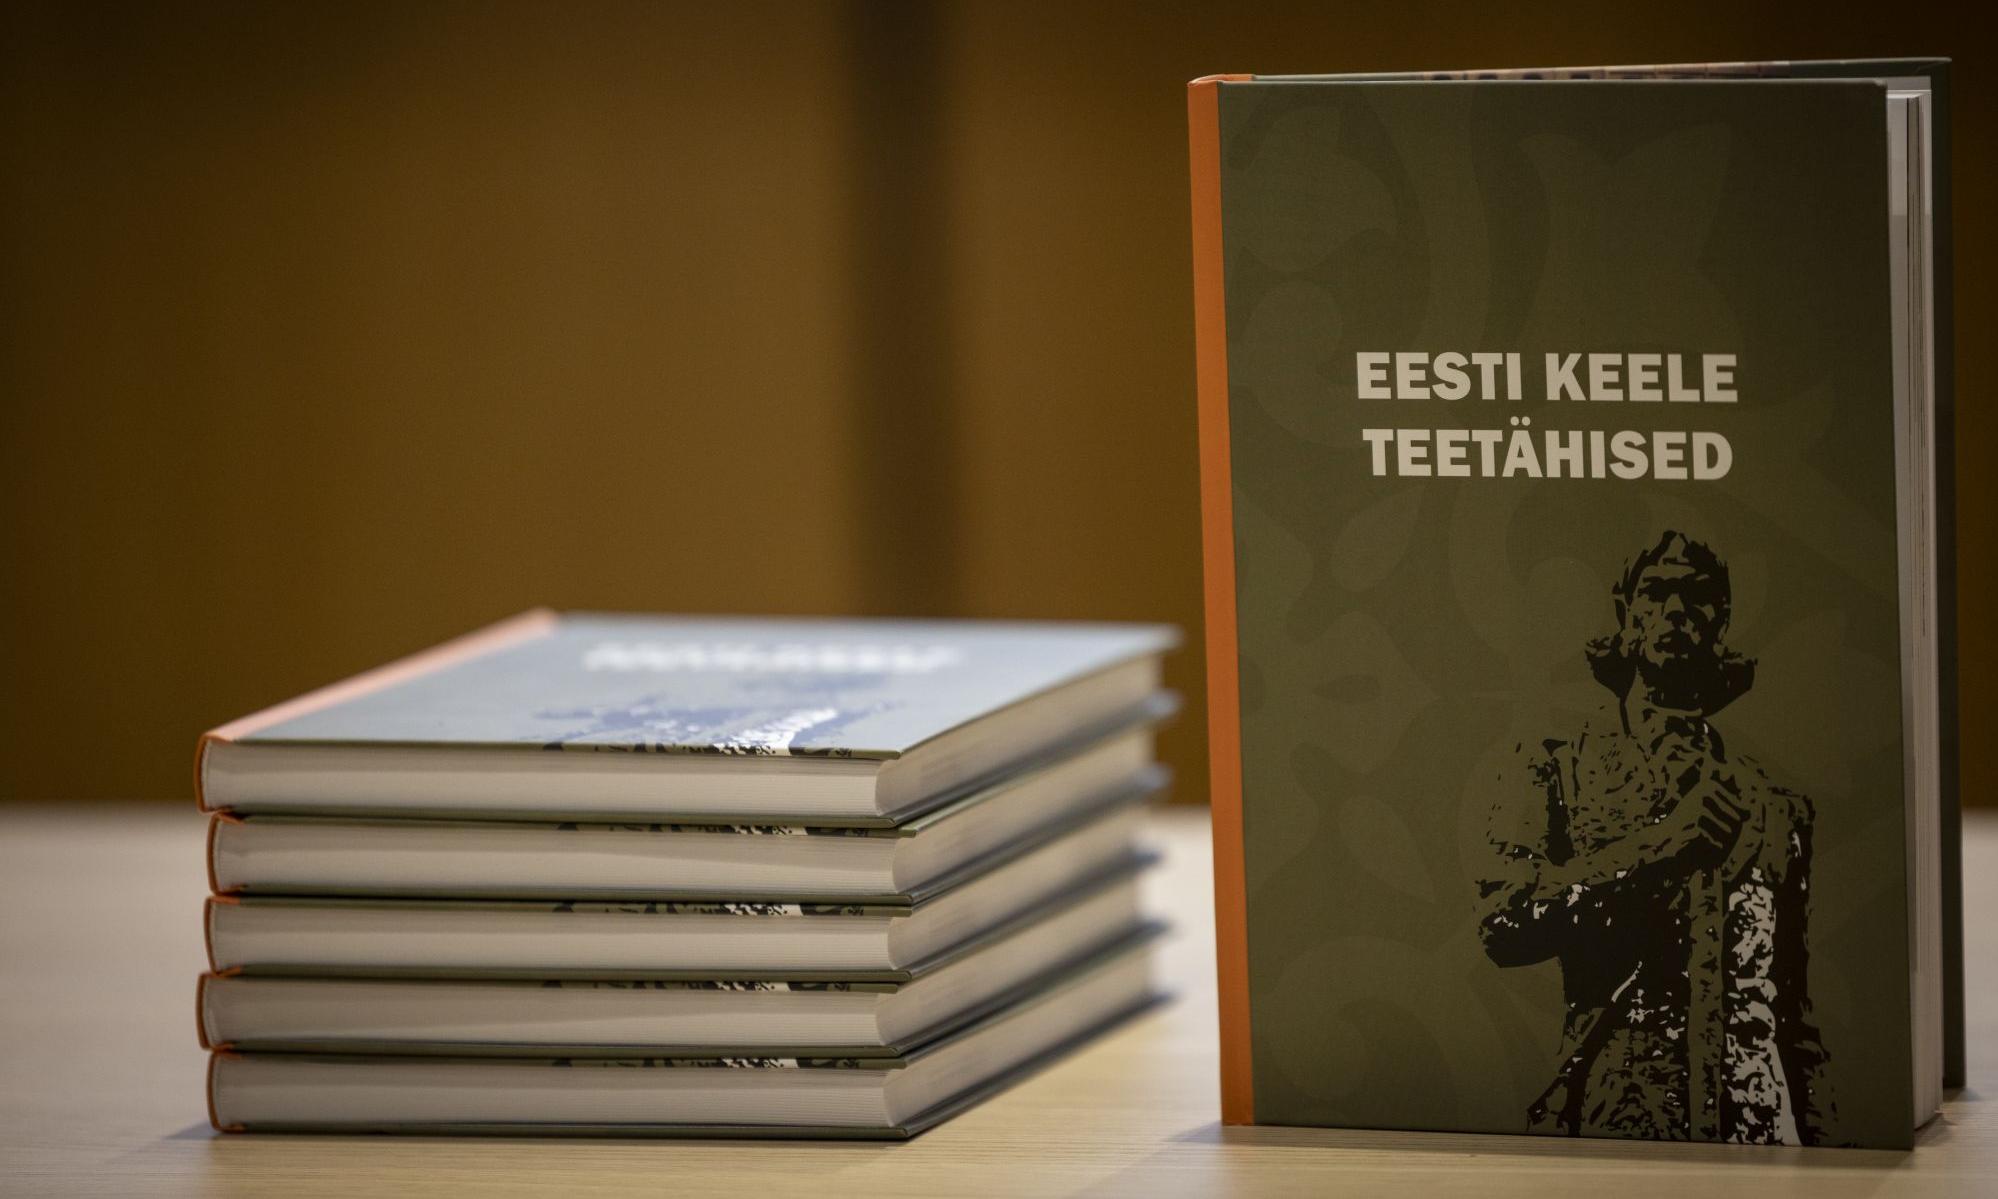 Raamatud esitlusel "Eesti keele teetähised"